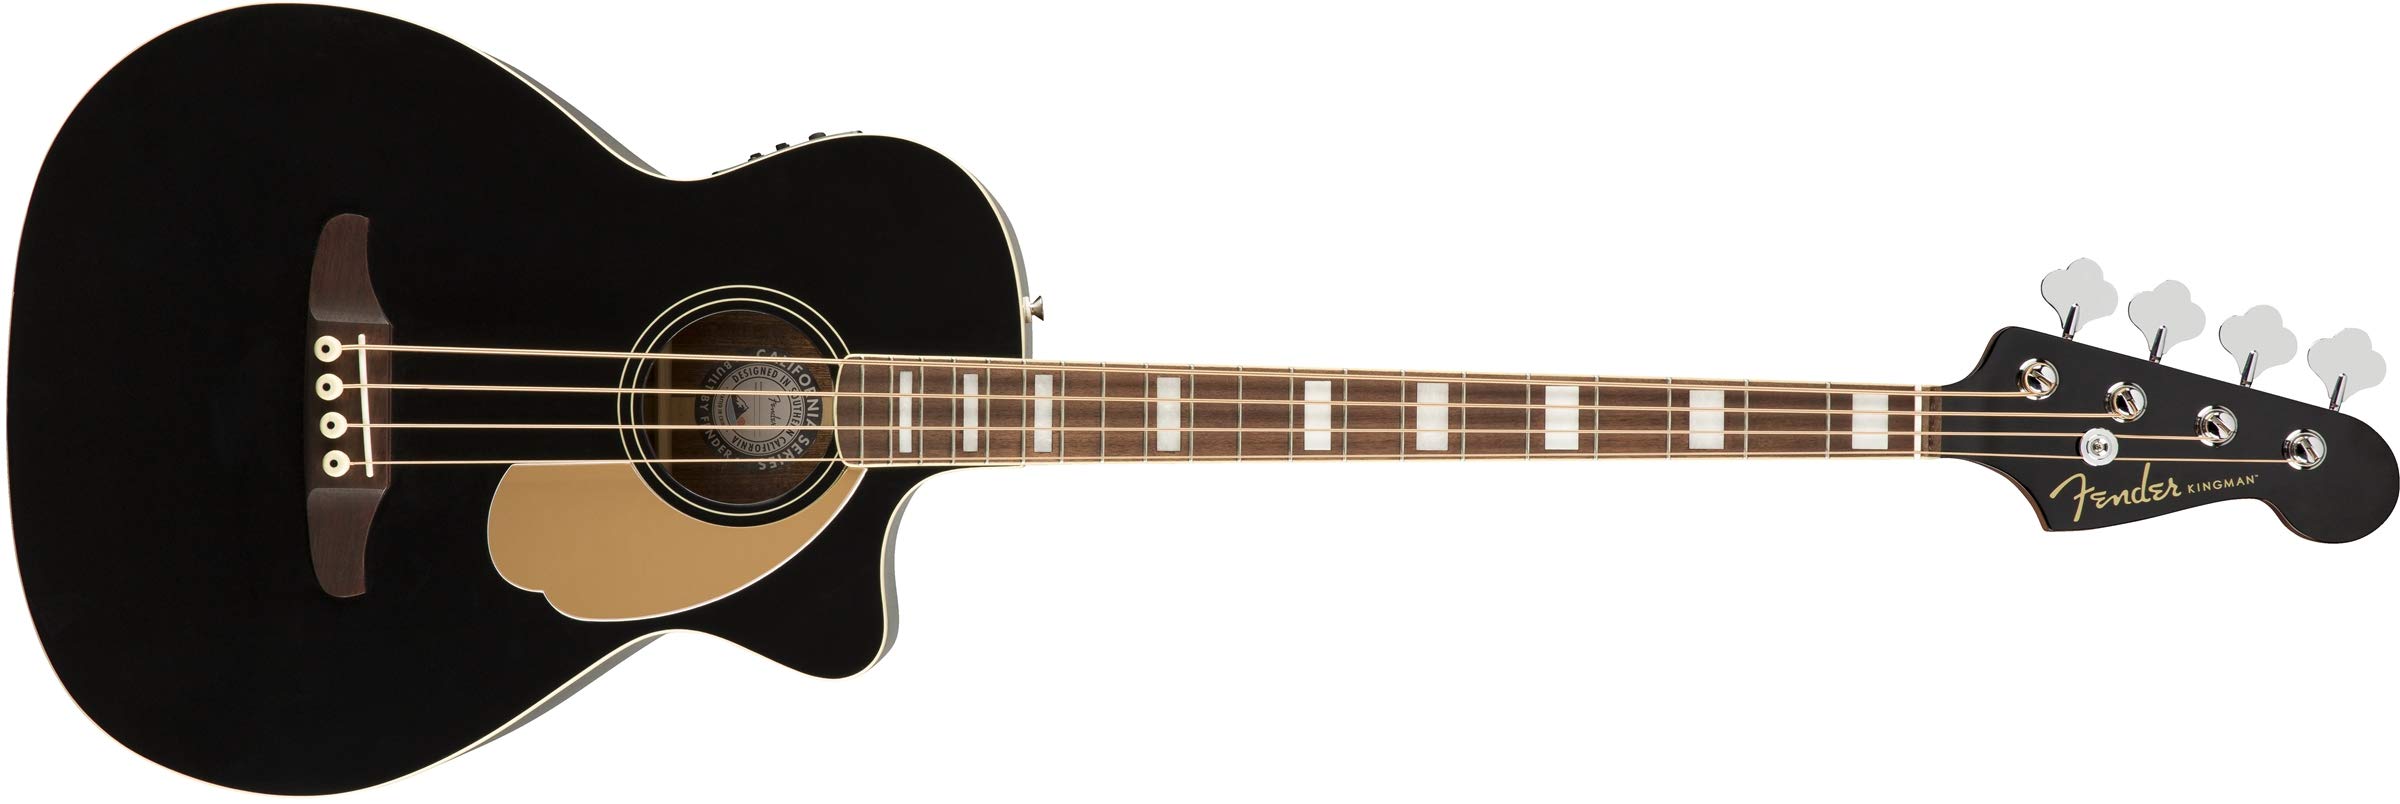 Fender Kingman 原声贝斯吉他 (V2) - 黑色 - 带包 - 胡桃木指板